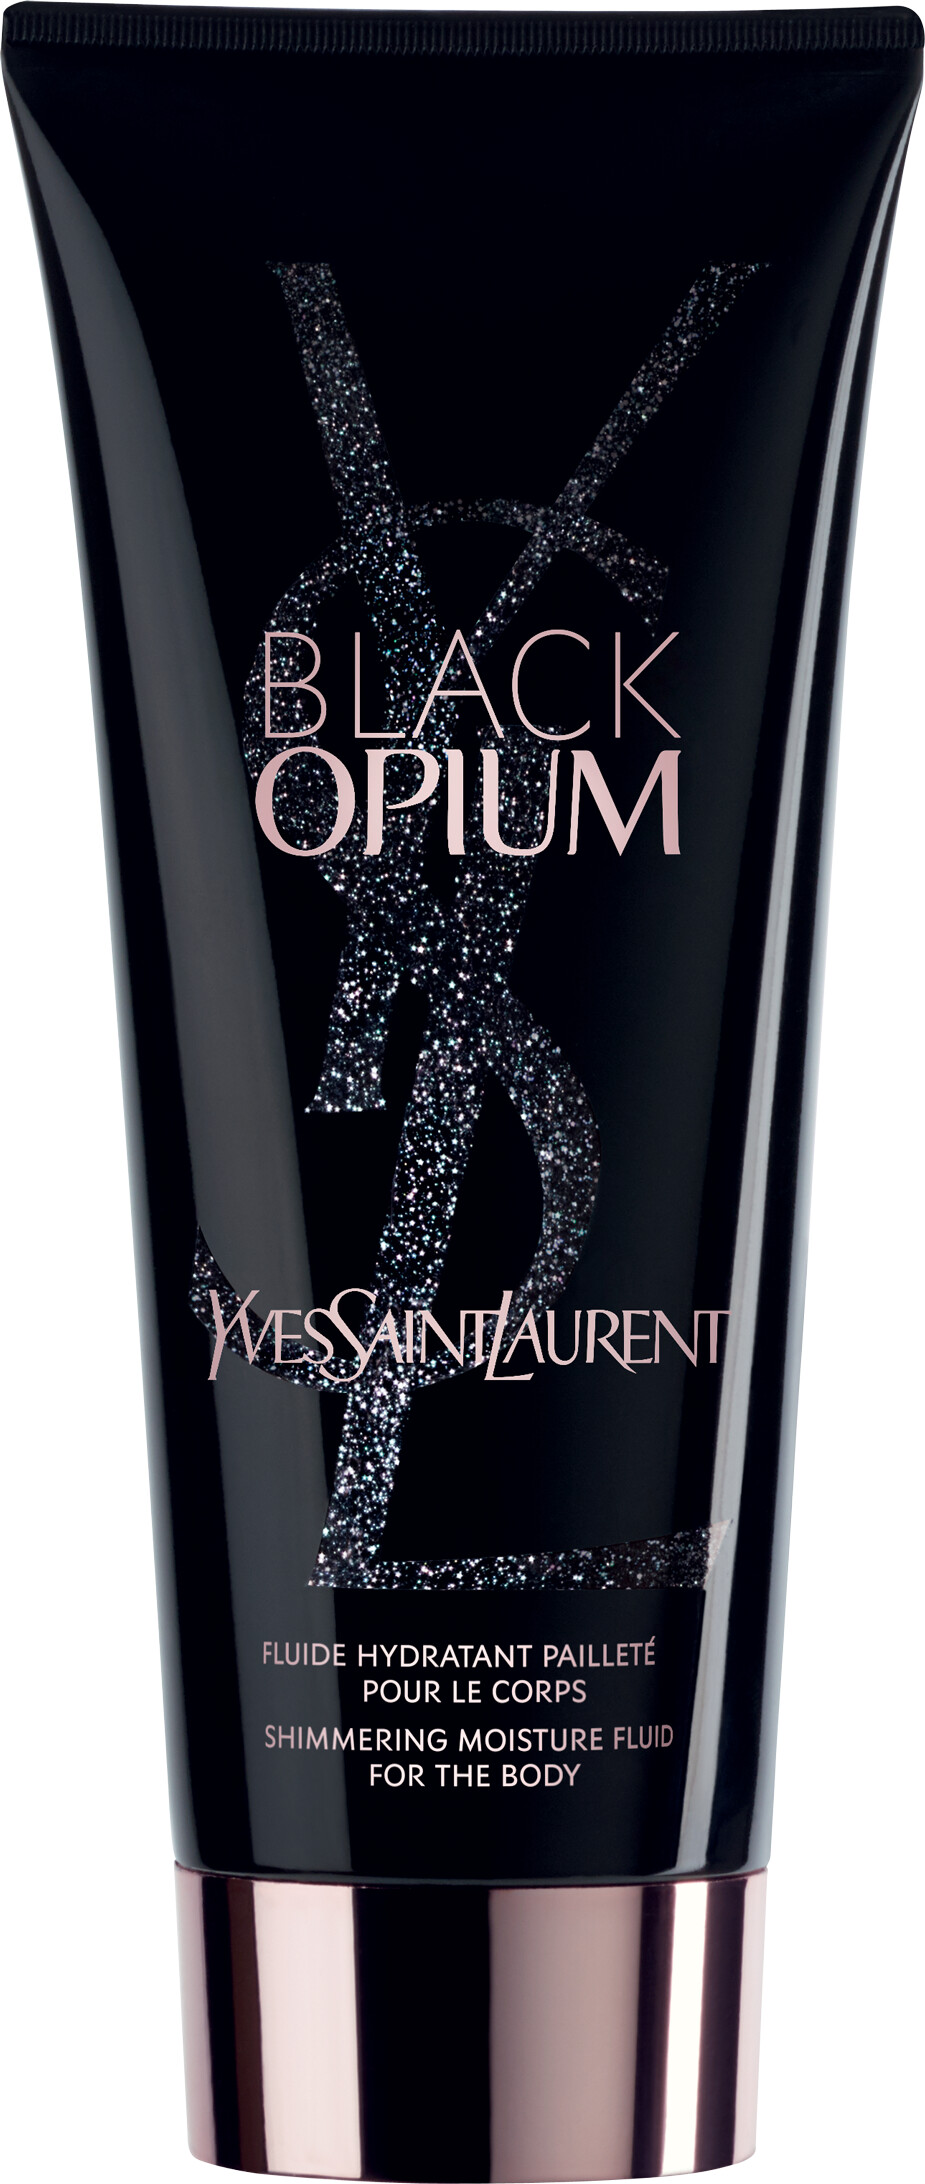 Yves Saint Laurent Black Opium Shimmering Moisture Fluid For The Body 200ml